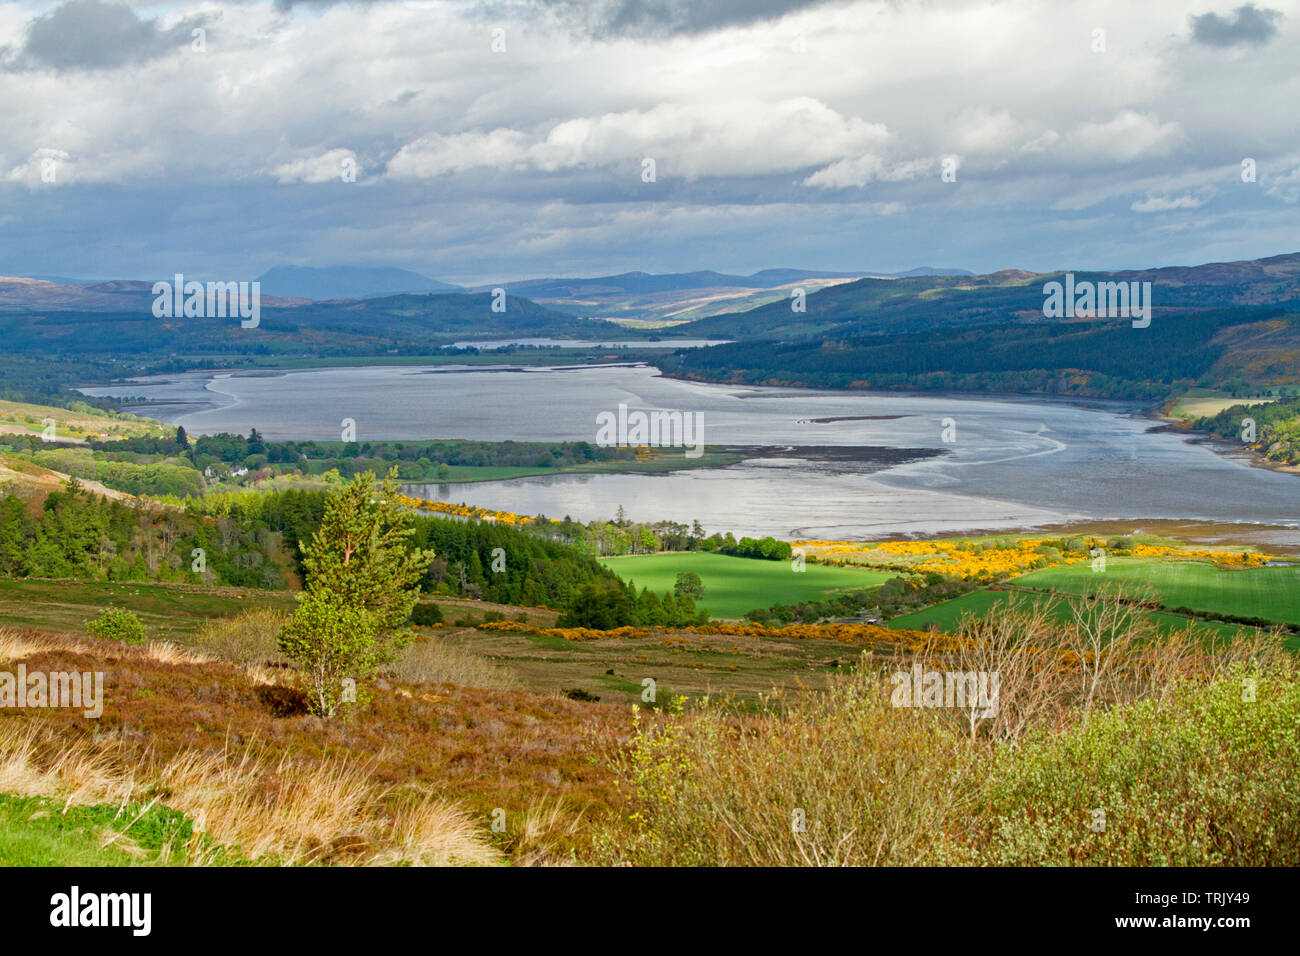 Große und bunte Landschaft mit Wasser der Dornoch Firth, umgeben von grünen Feldern und golden Ginster und Bergen gesäumt in Schottland Stockfoto